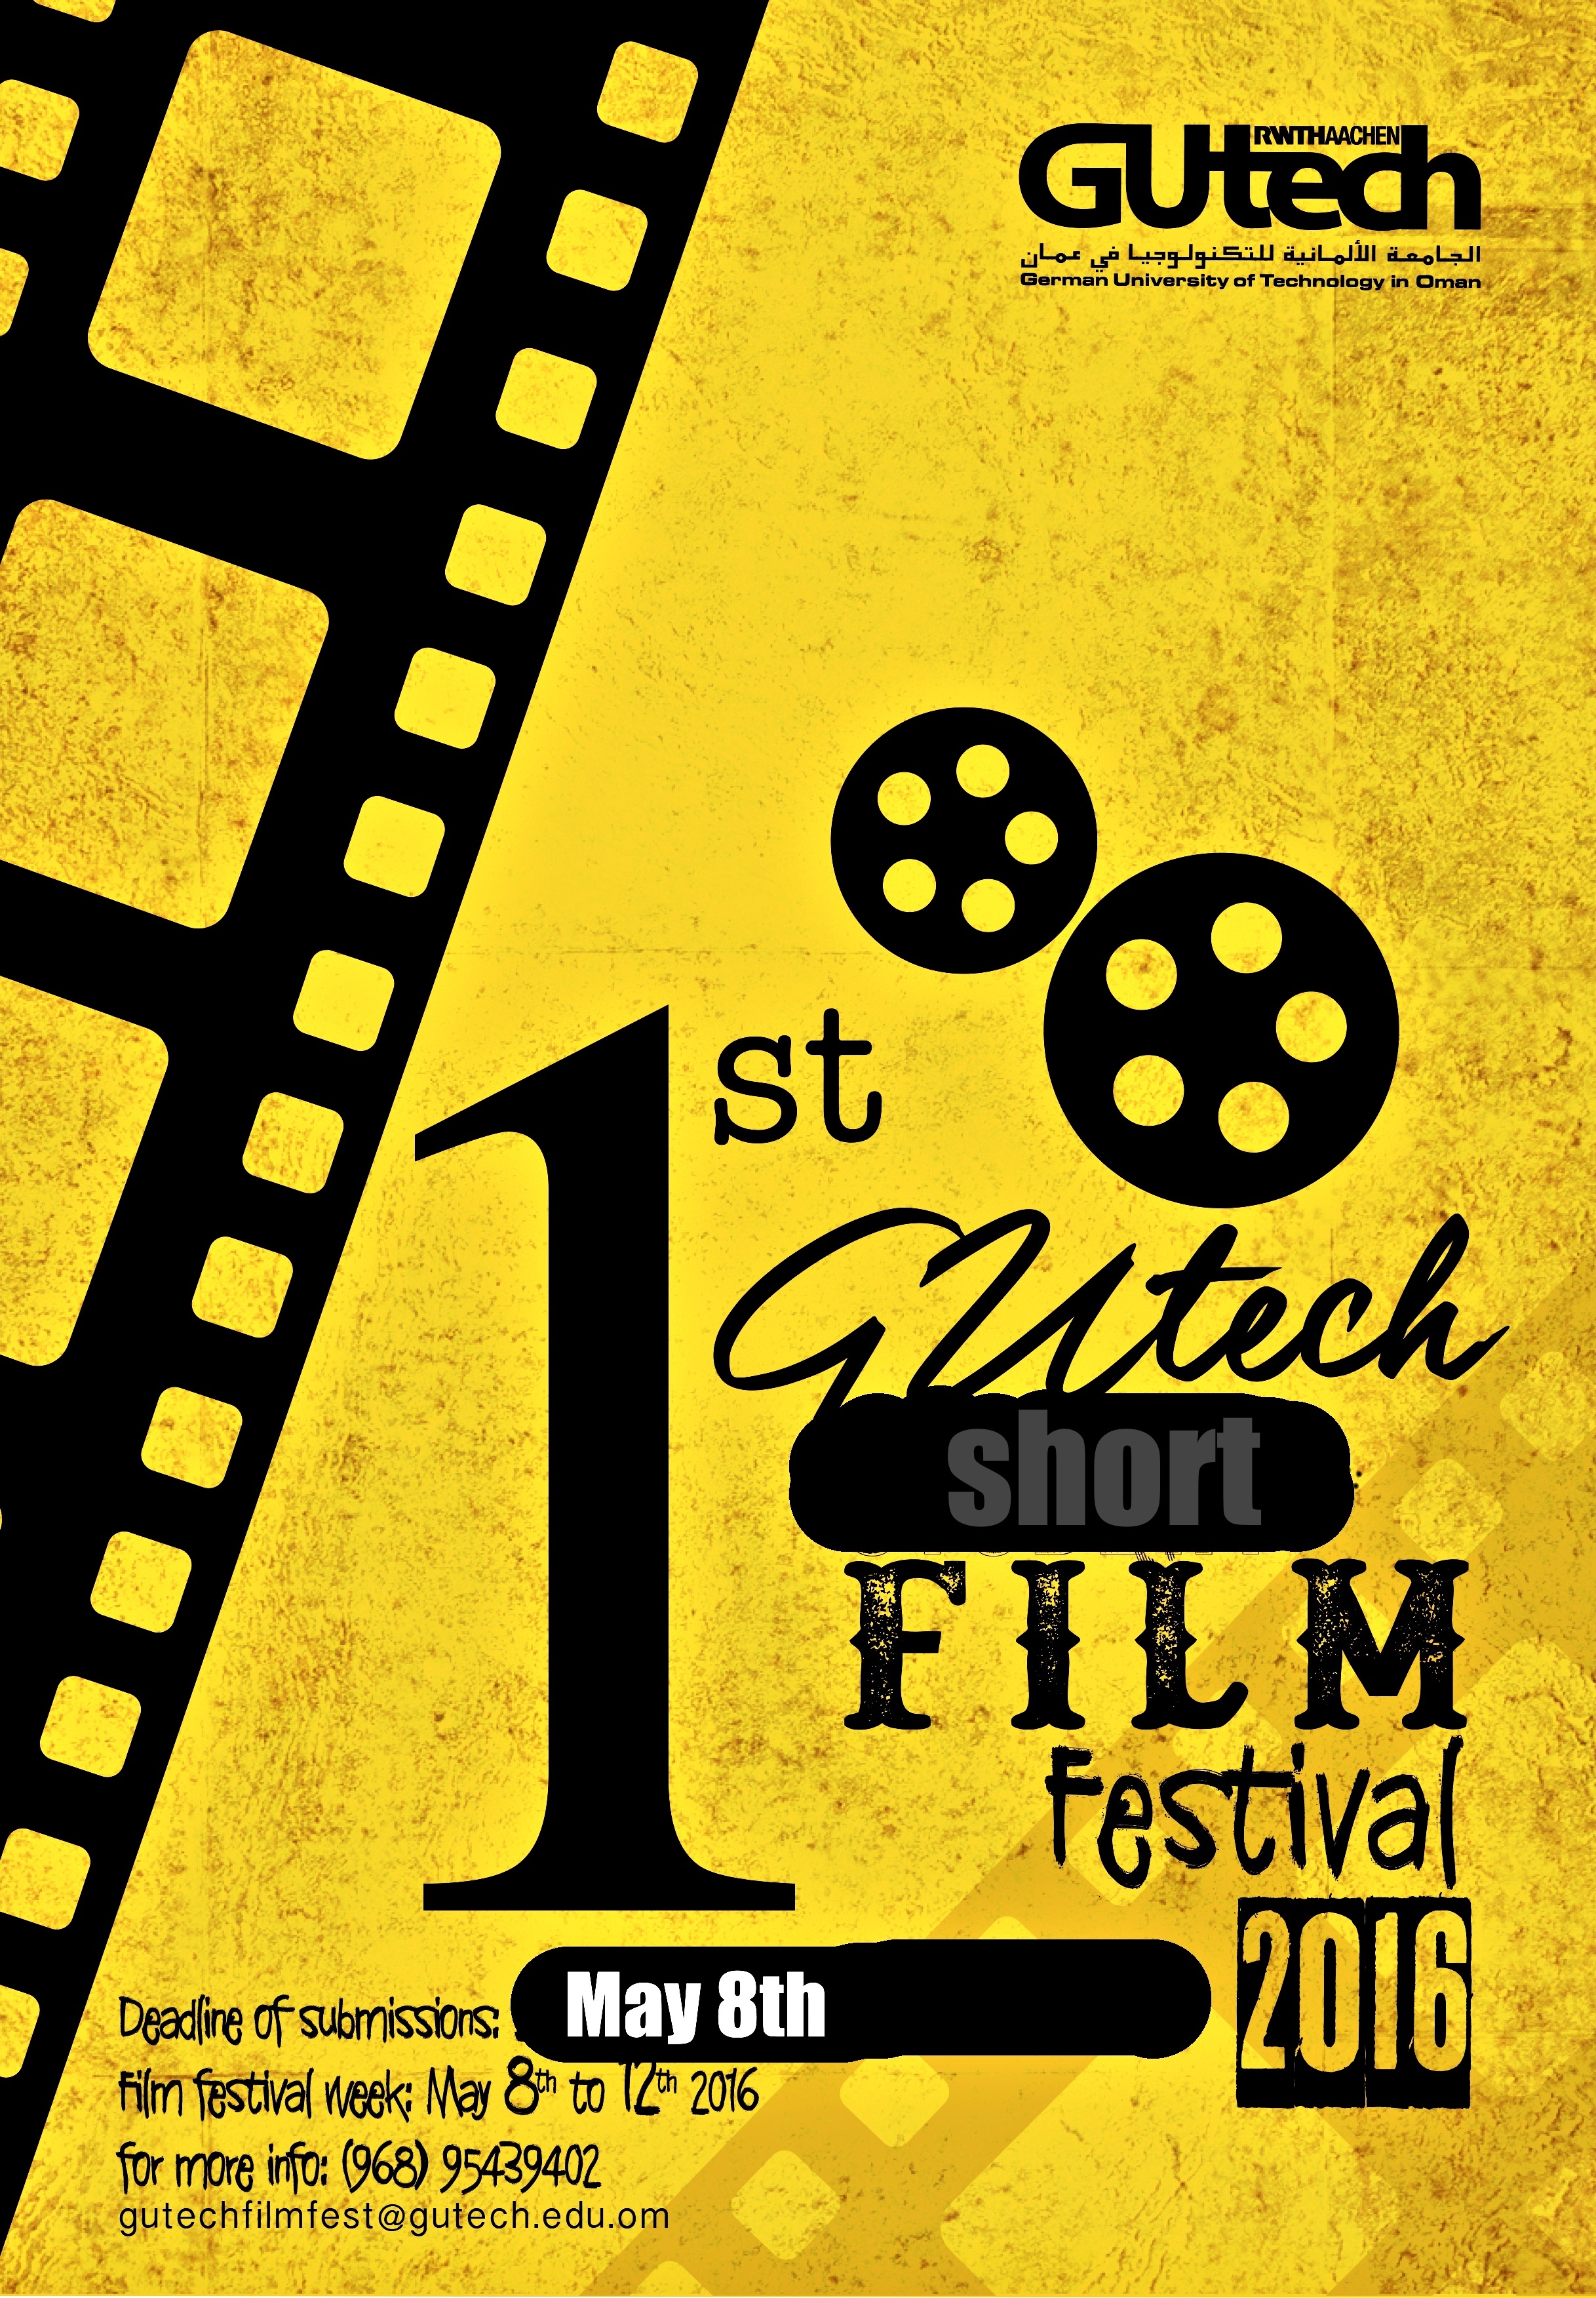 Festival of short films at Oman's GUtech